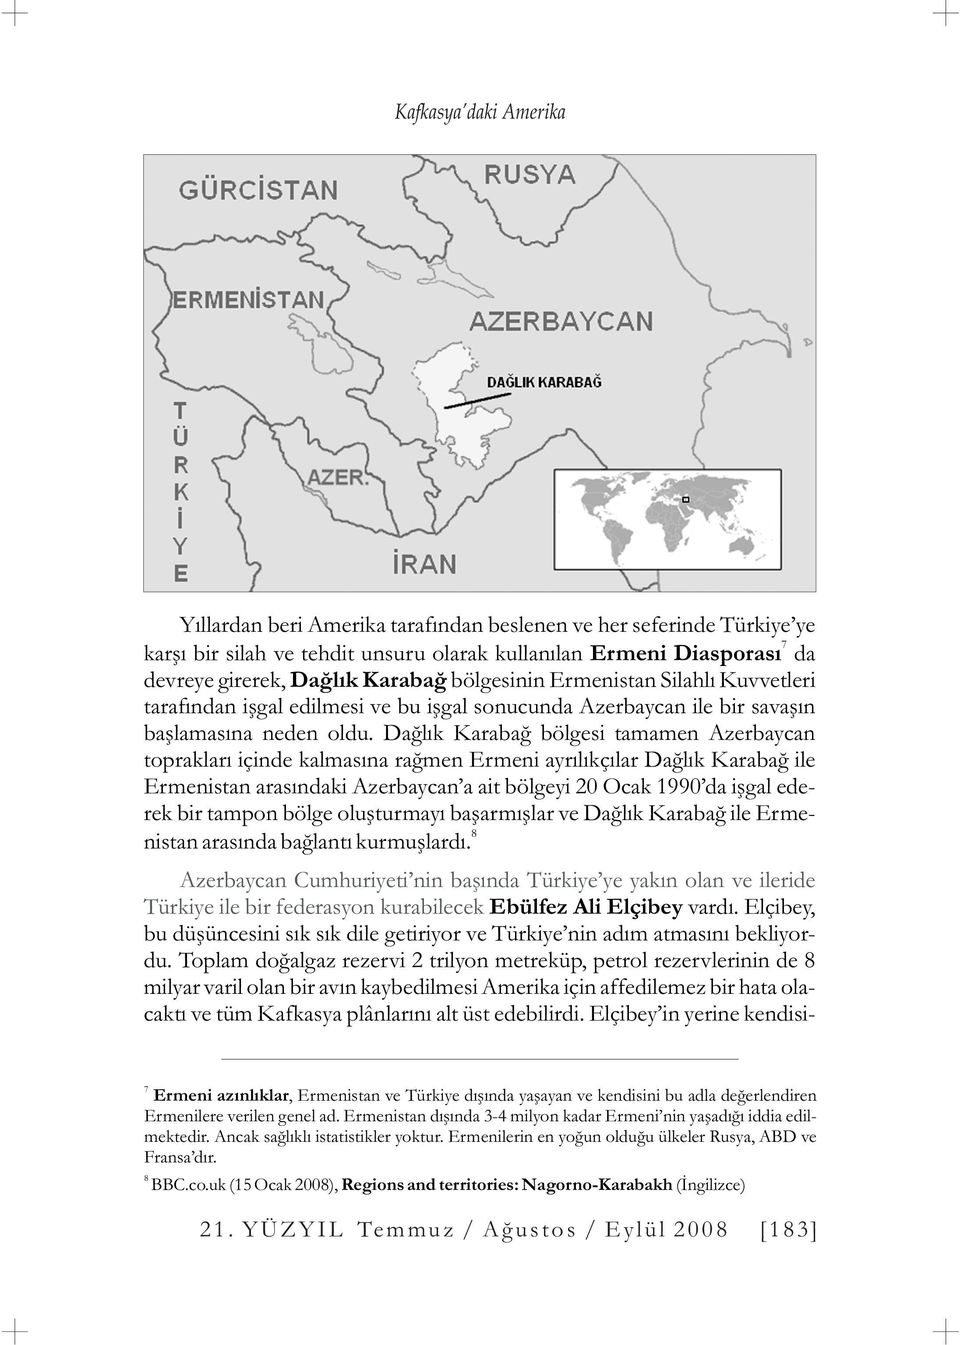 Daðlýk Karabað bölgesi tamamen Azerbaycan topraklarý içinde kalmasýna raðmen Ermeni ayrýlýkçýlar Daðlýk Karabað ile Ermenistan arasýndaki Azerbaycan a ait bölgeyi 20 Ocak 1990 da iþgal ederek bir